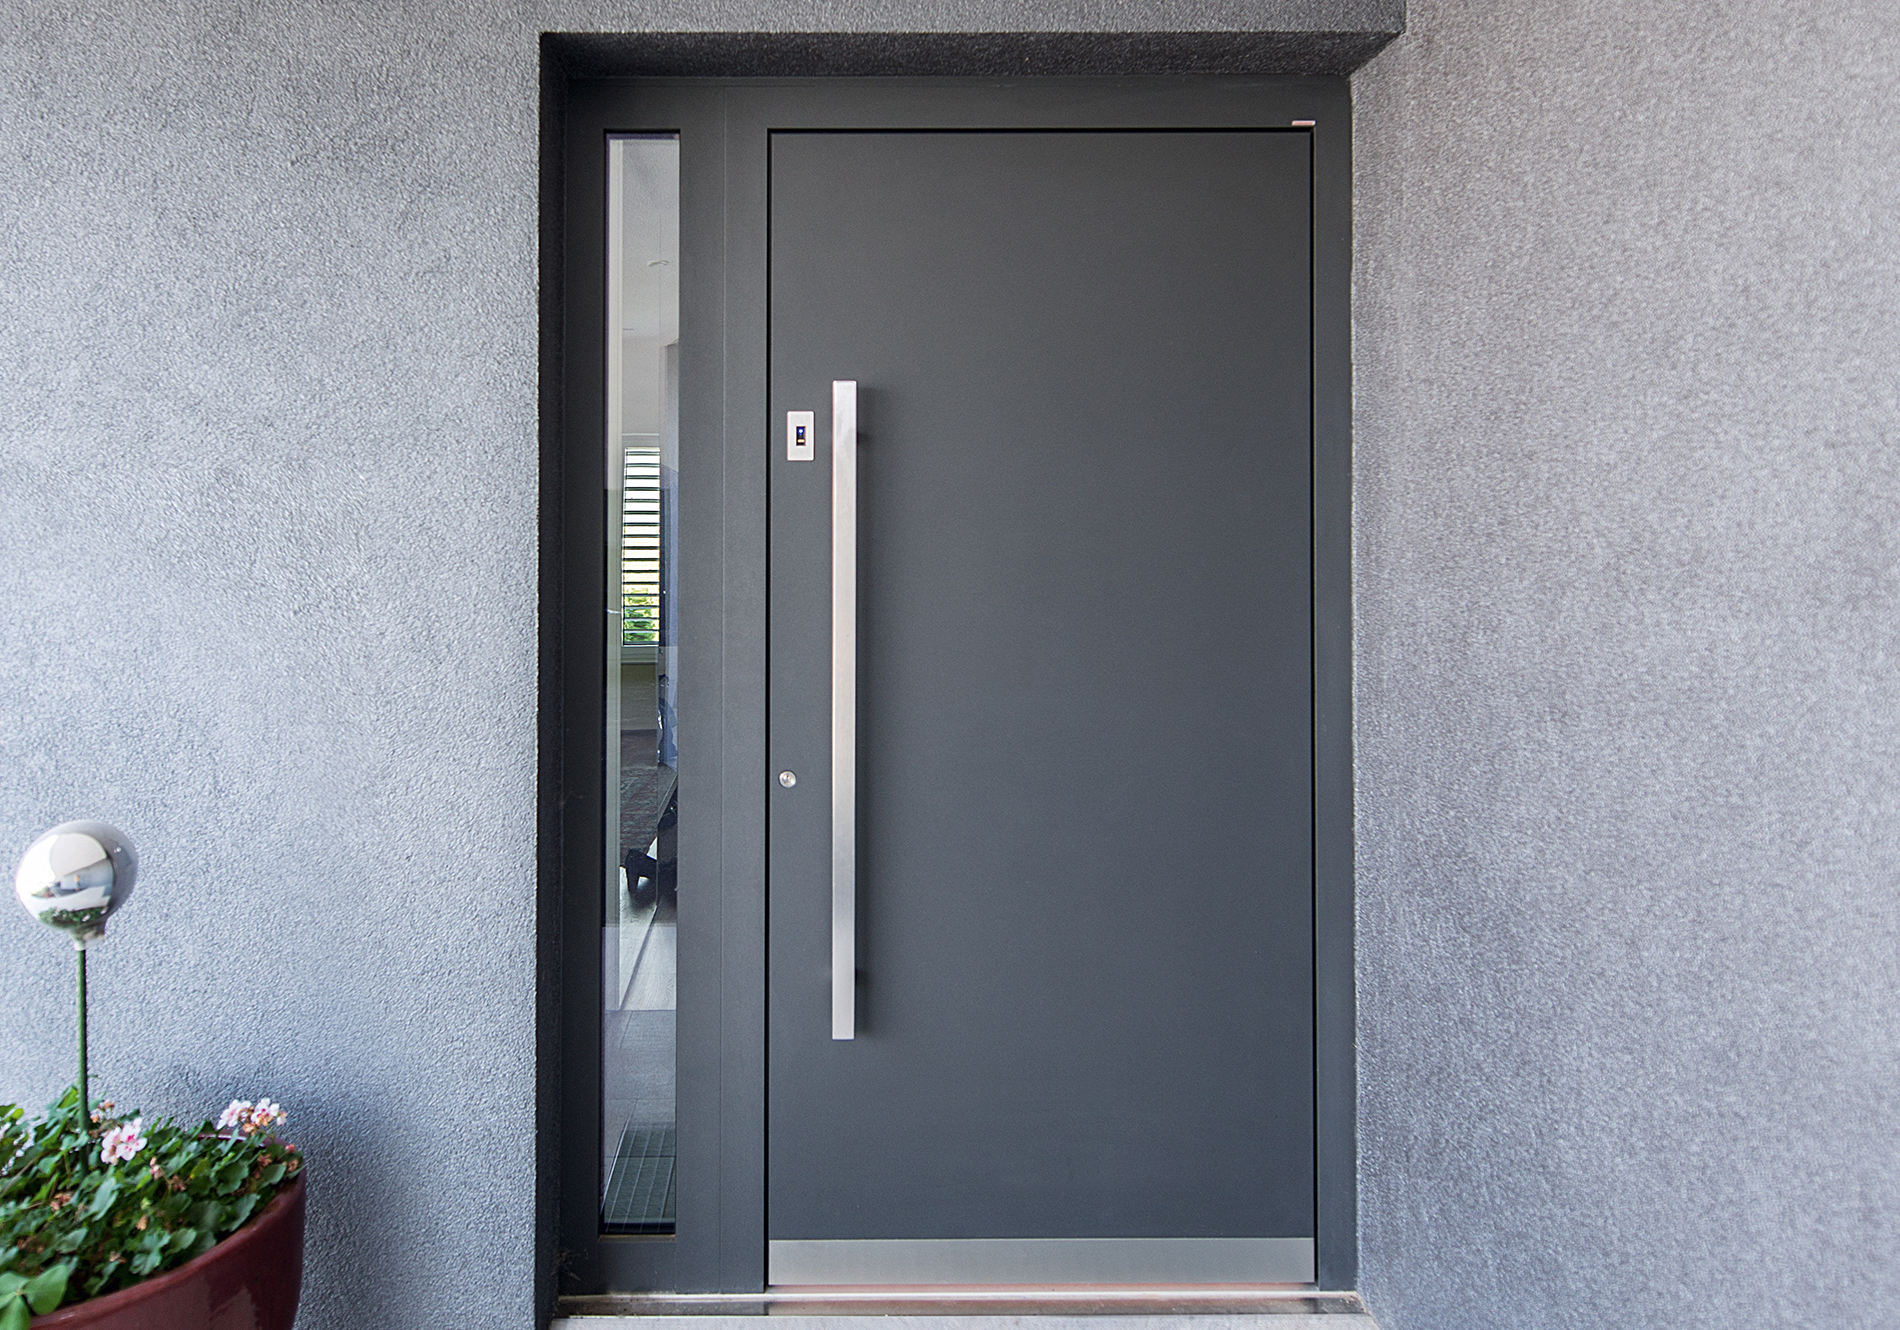 Internorm entrance door featuring smart innovation fingerprint scanner.